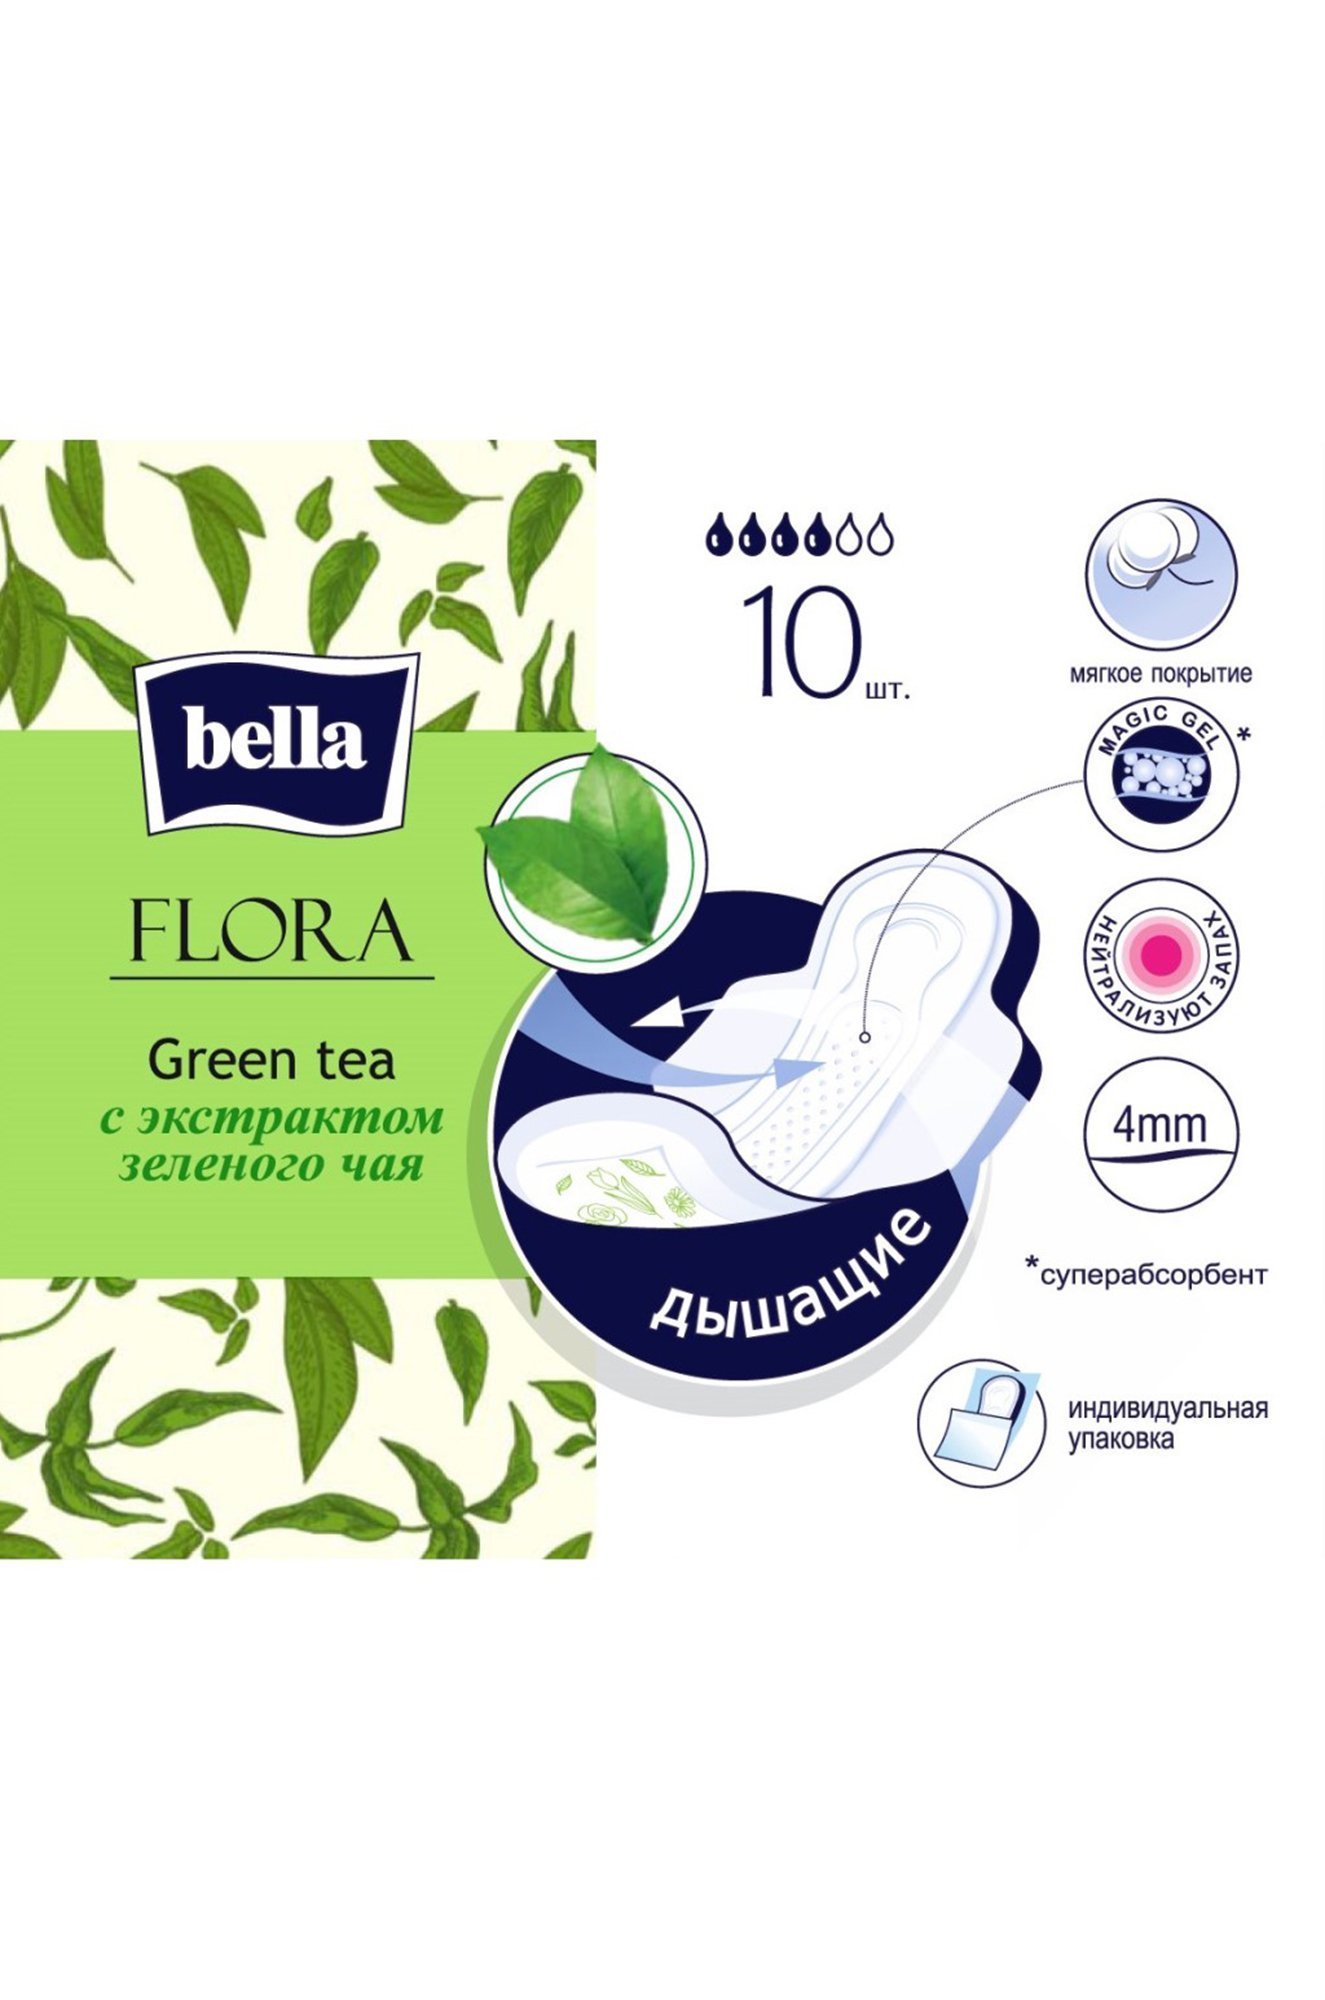 Женские гигиенические прокладки с экстрактом зеленого чая bella FLORA Green tea 10 шт. Bella